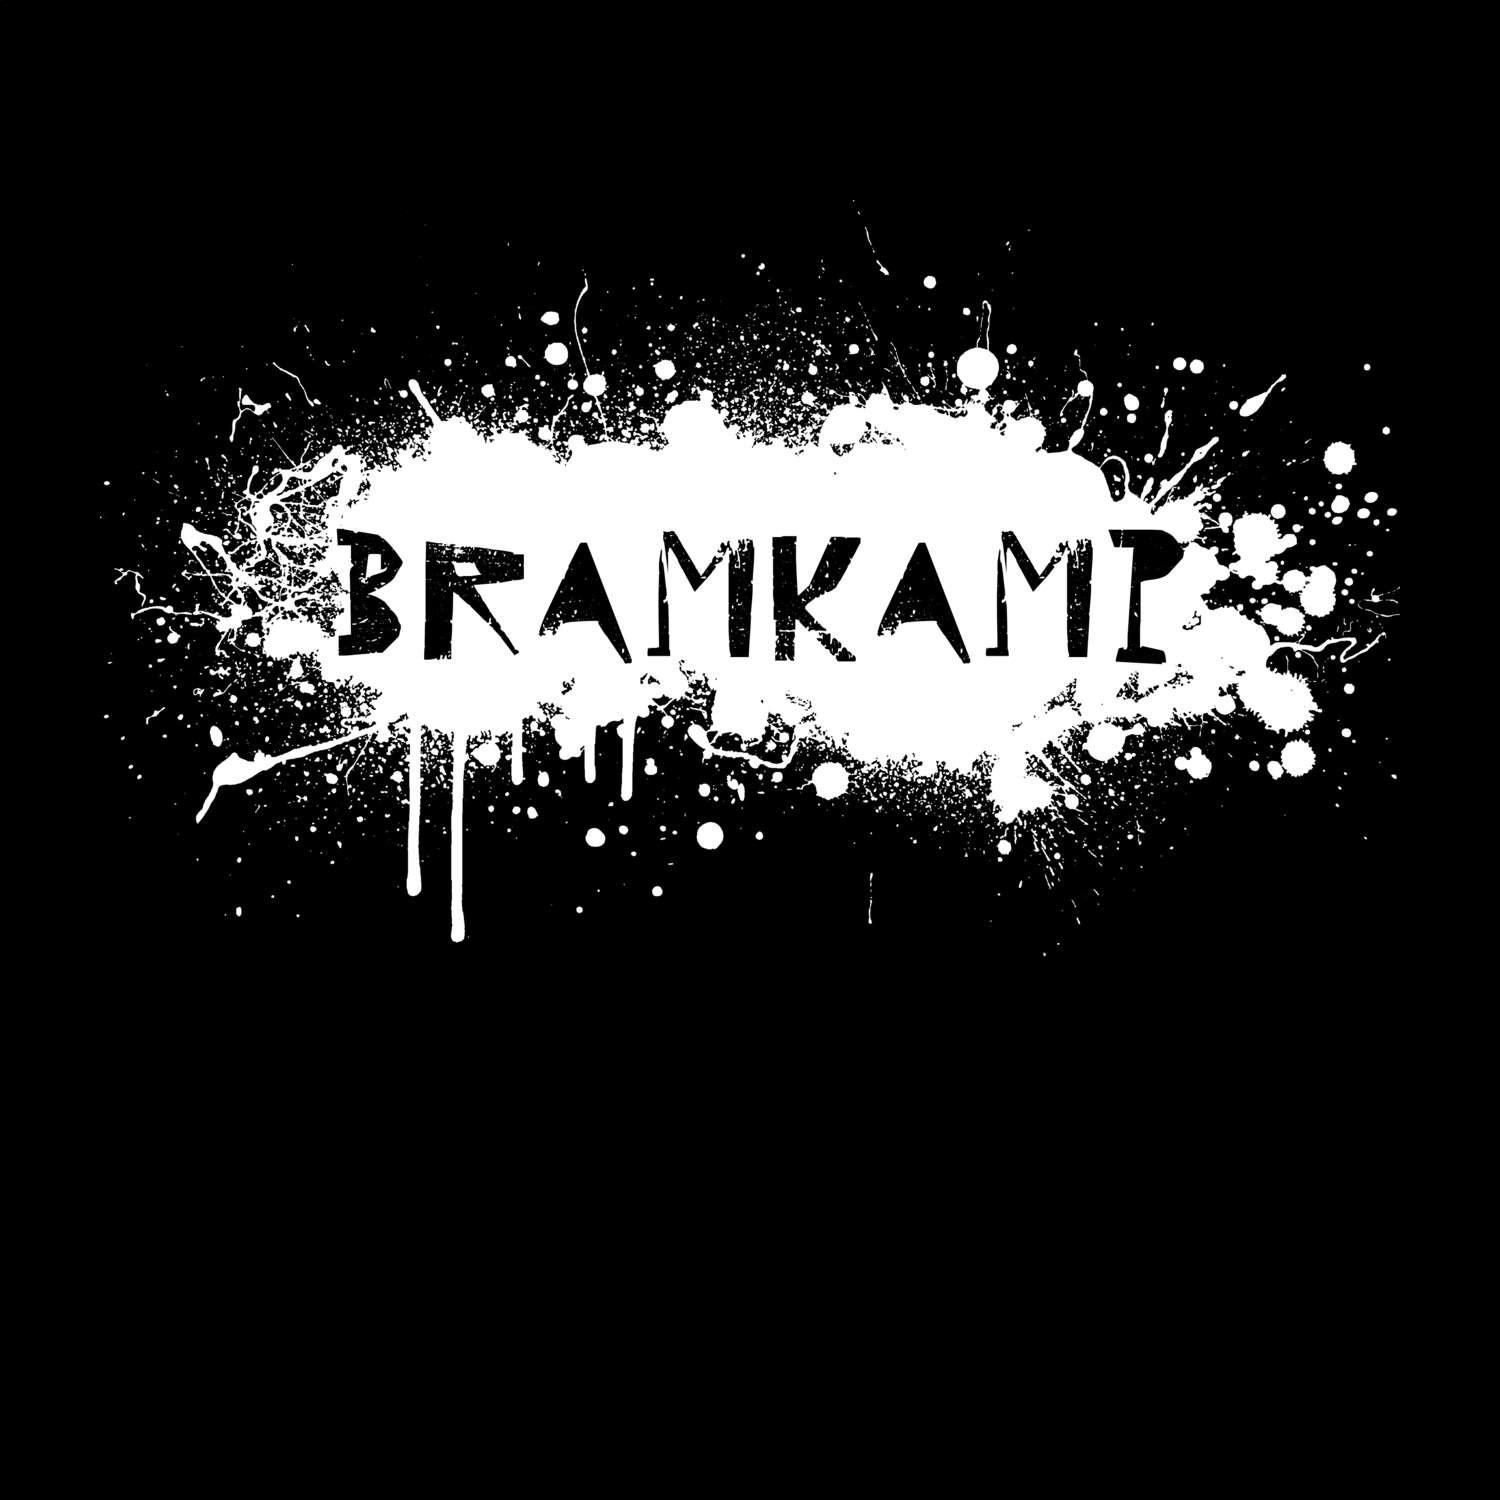 Bramkamp T-Shirt »Paint Splash Punk«